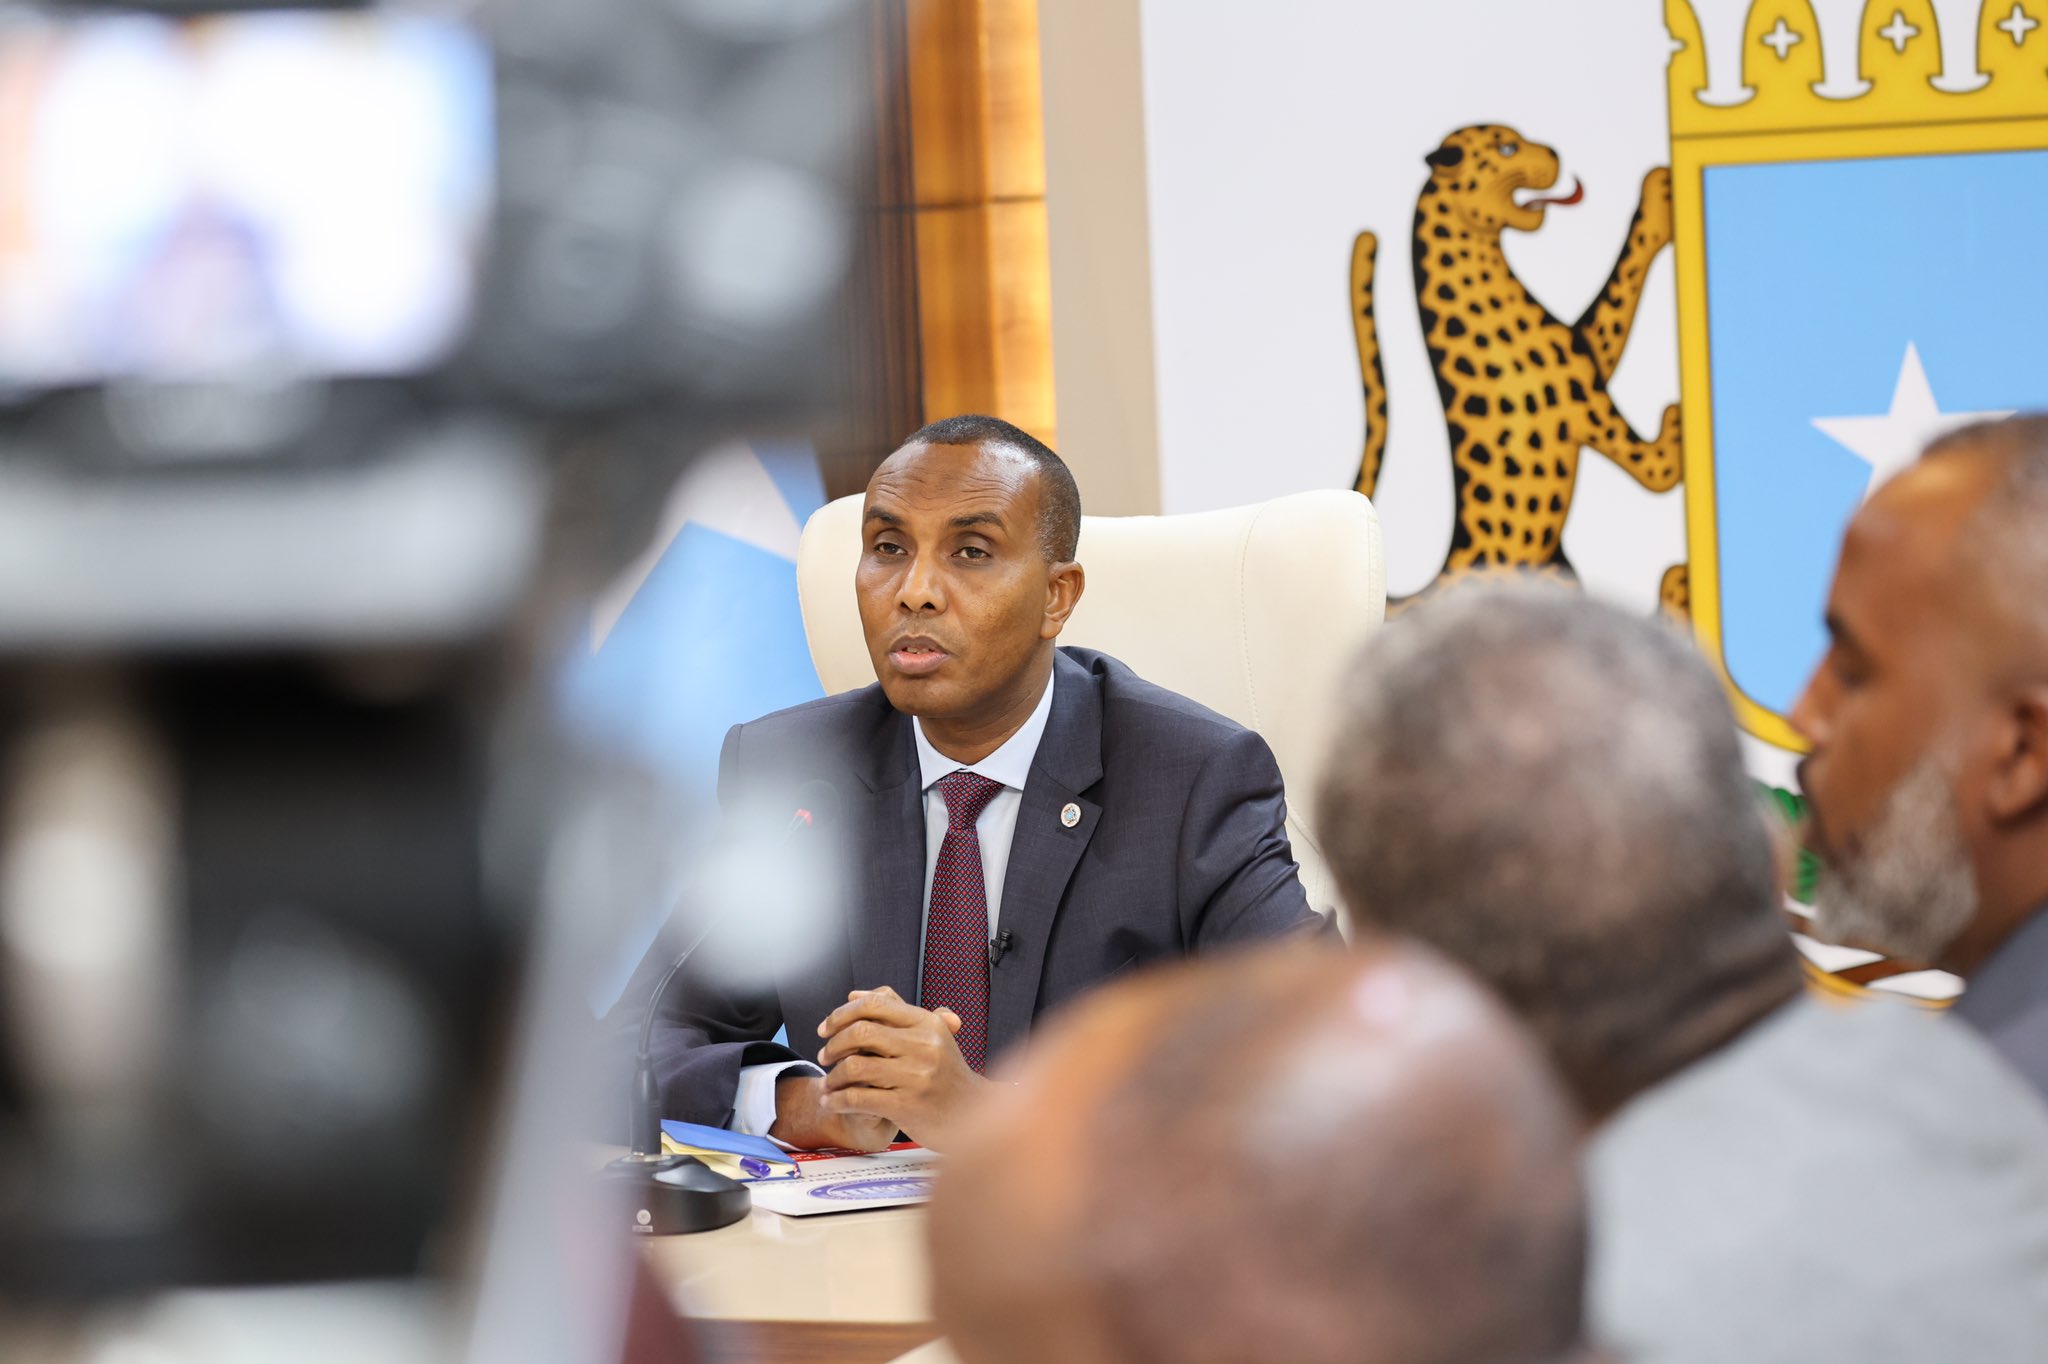 , رئيس الوزراء: حركة الشباب هي أكبر مشكلة تواجهها الصومال وإحراز اي تقدم مرتبط بهزيمتها